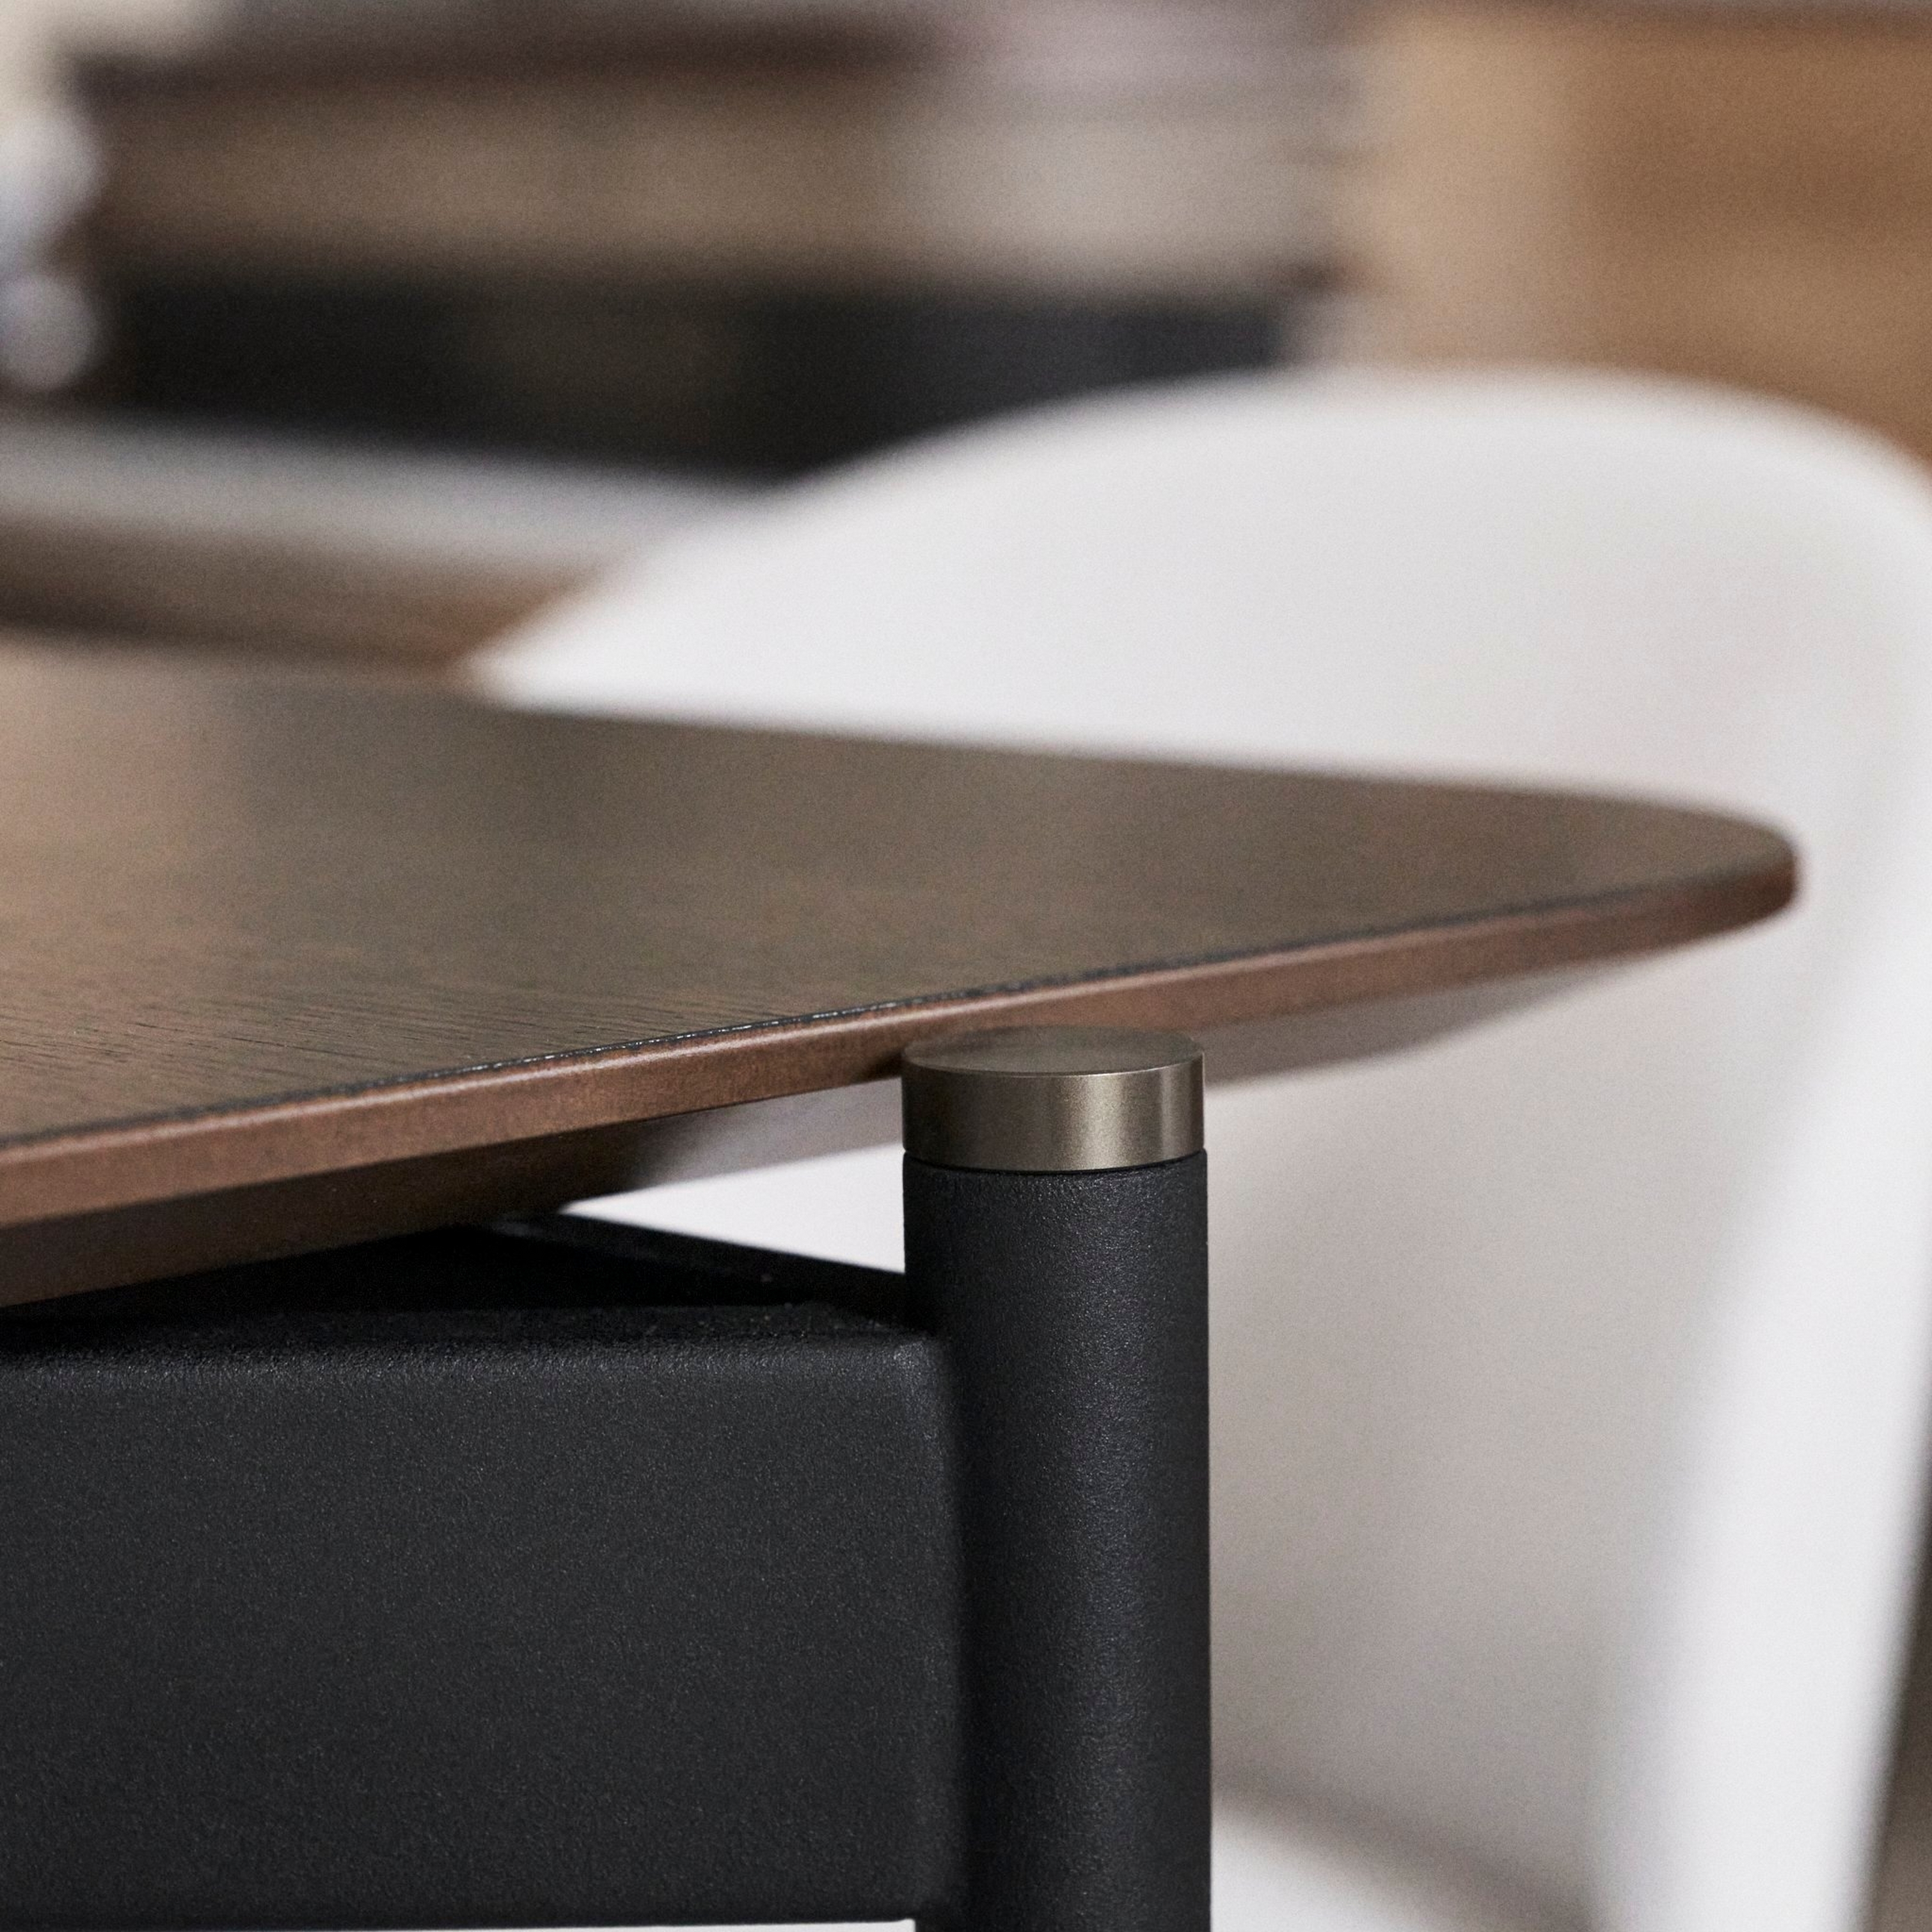 有深色橡木實木貼面桌面的 Augusta 桌子